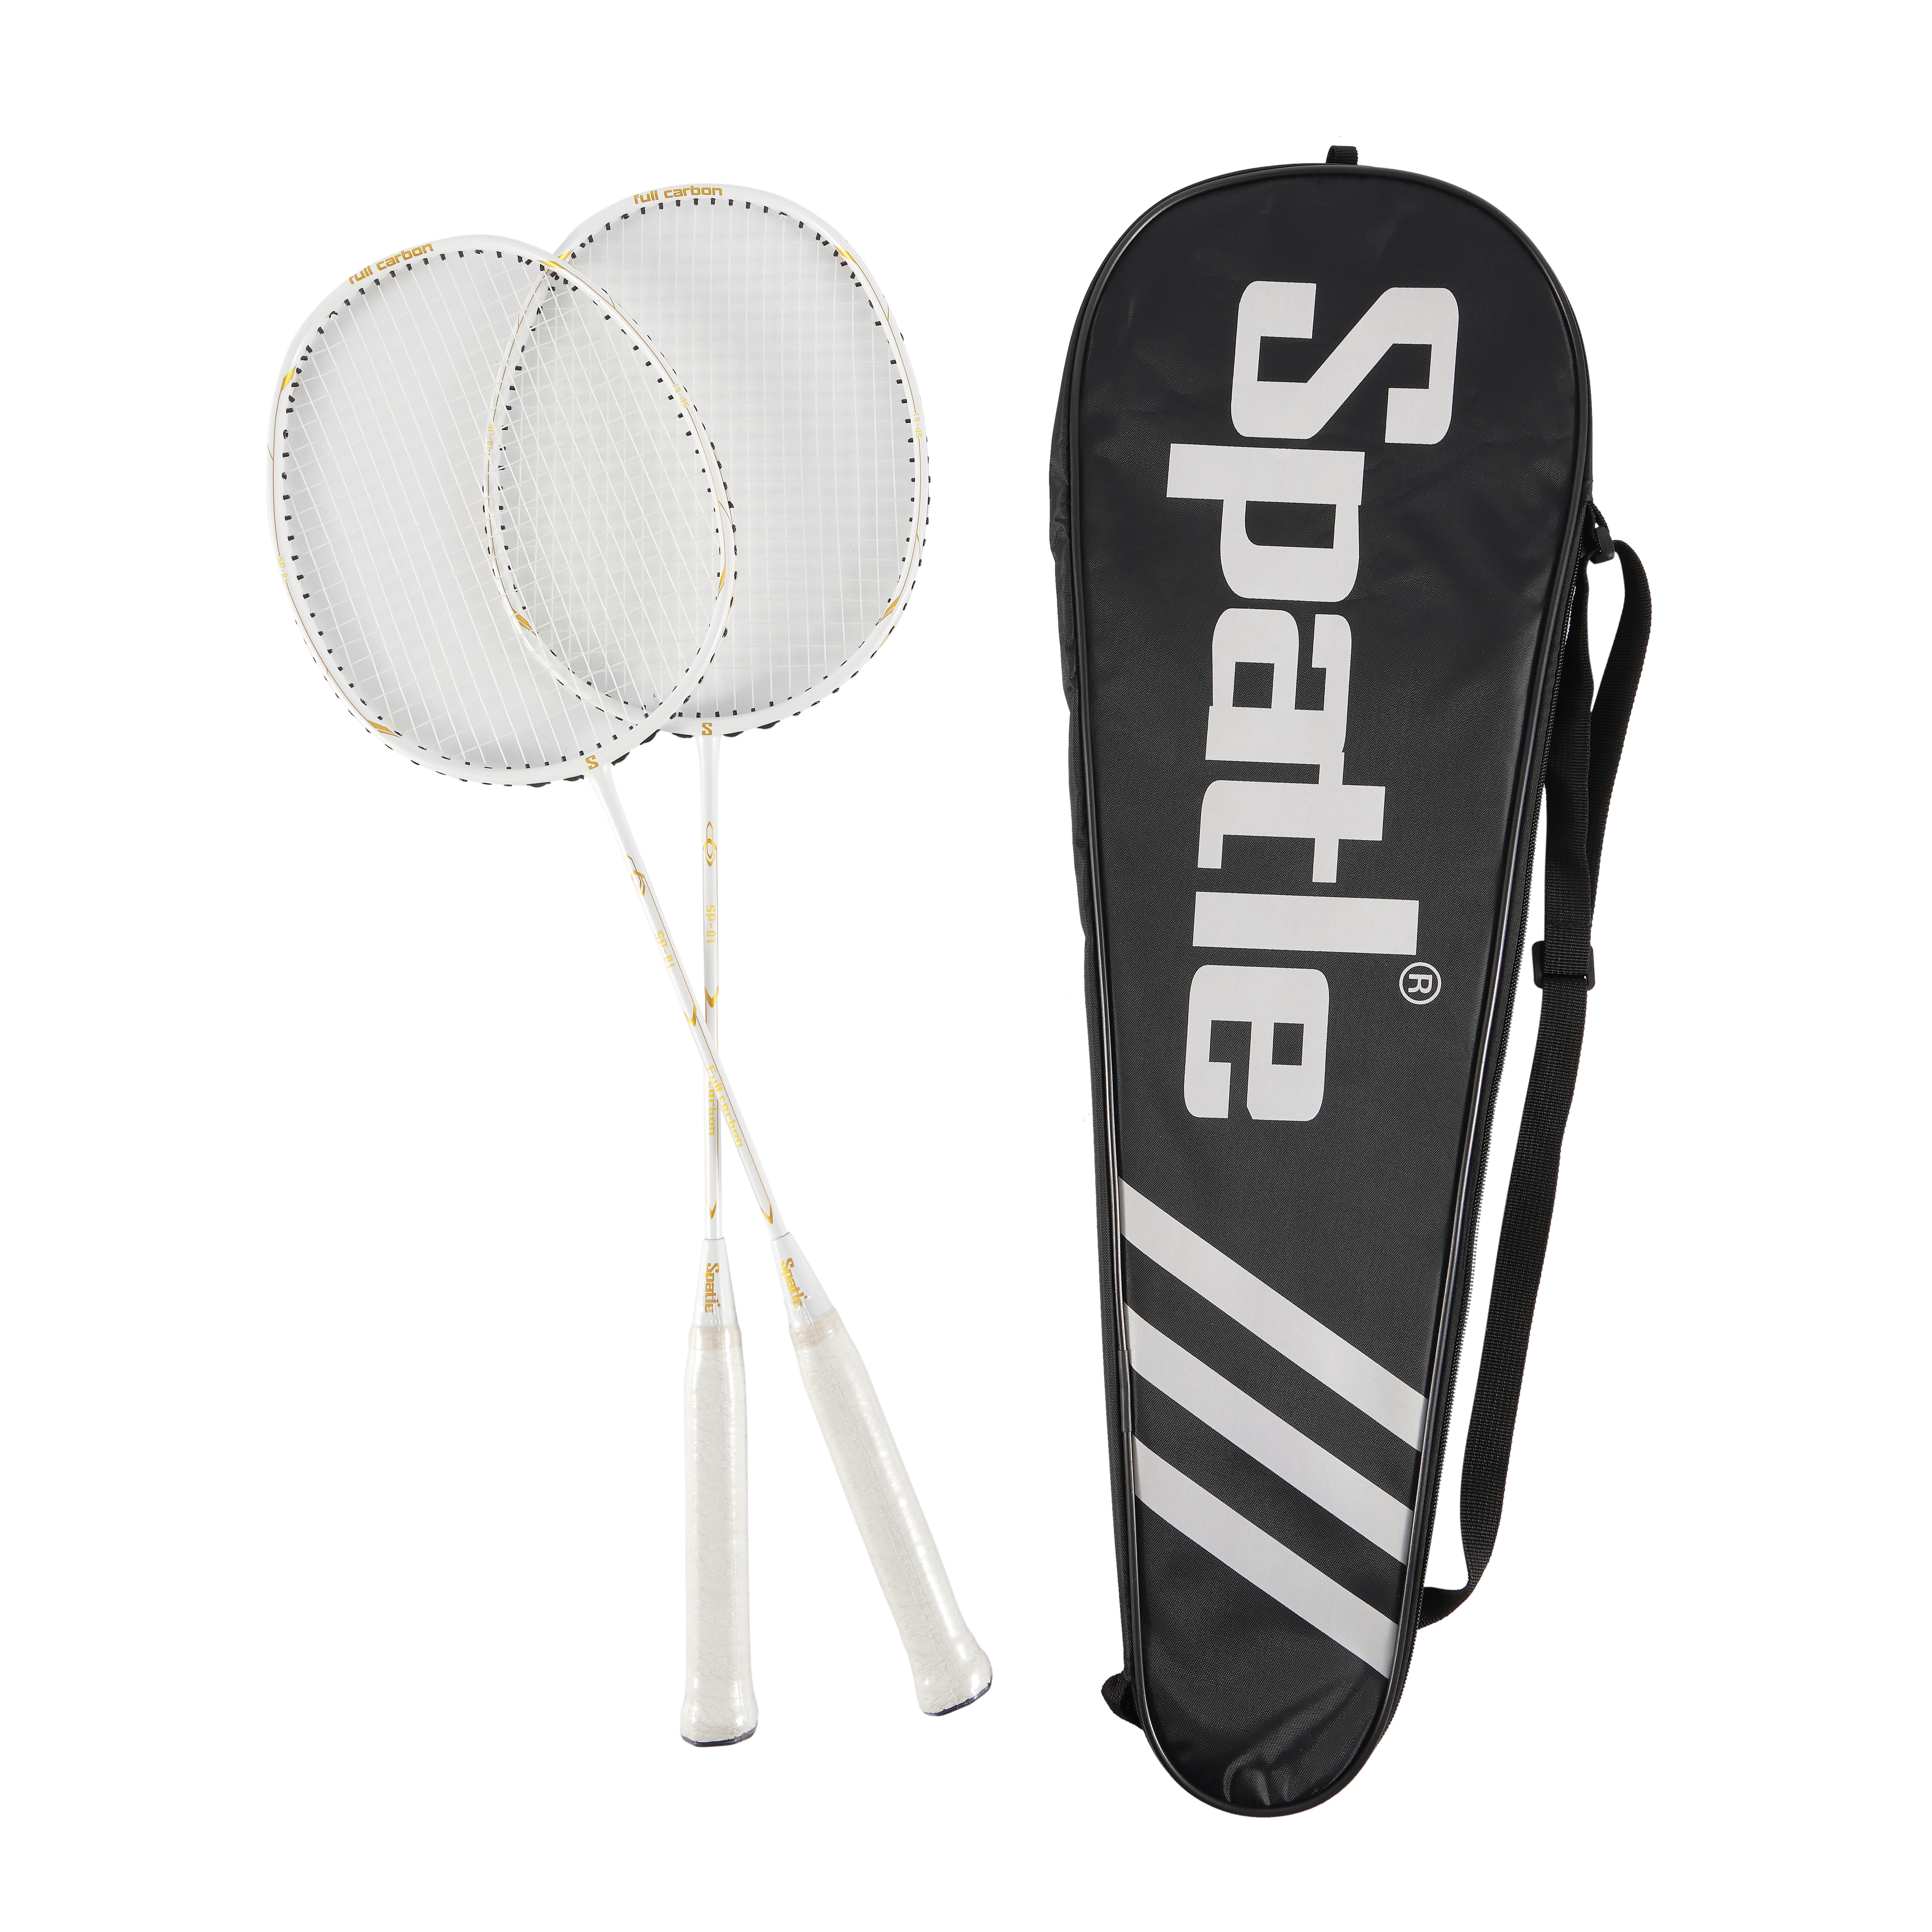 Choisir la bonne raquette de badminton pour les débutants